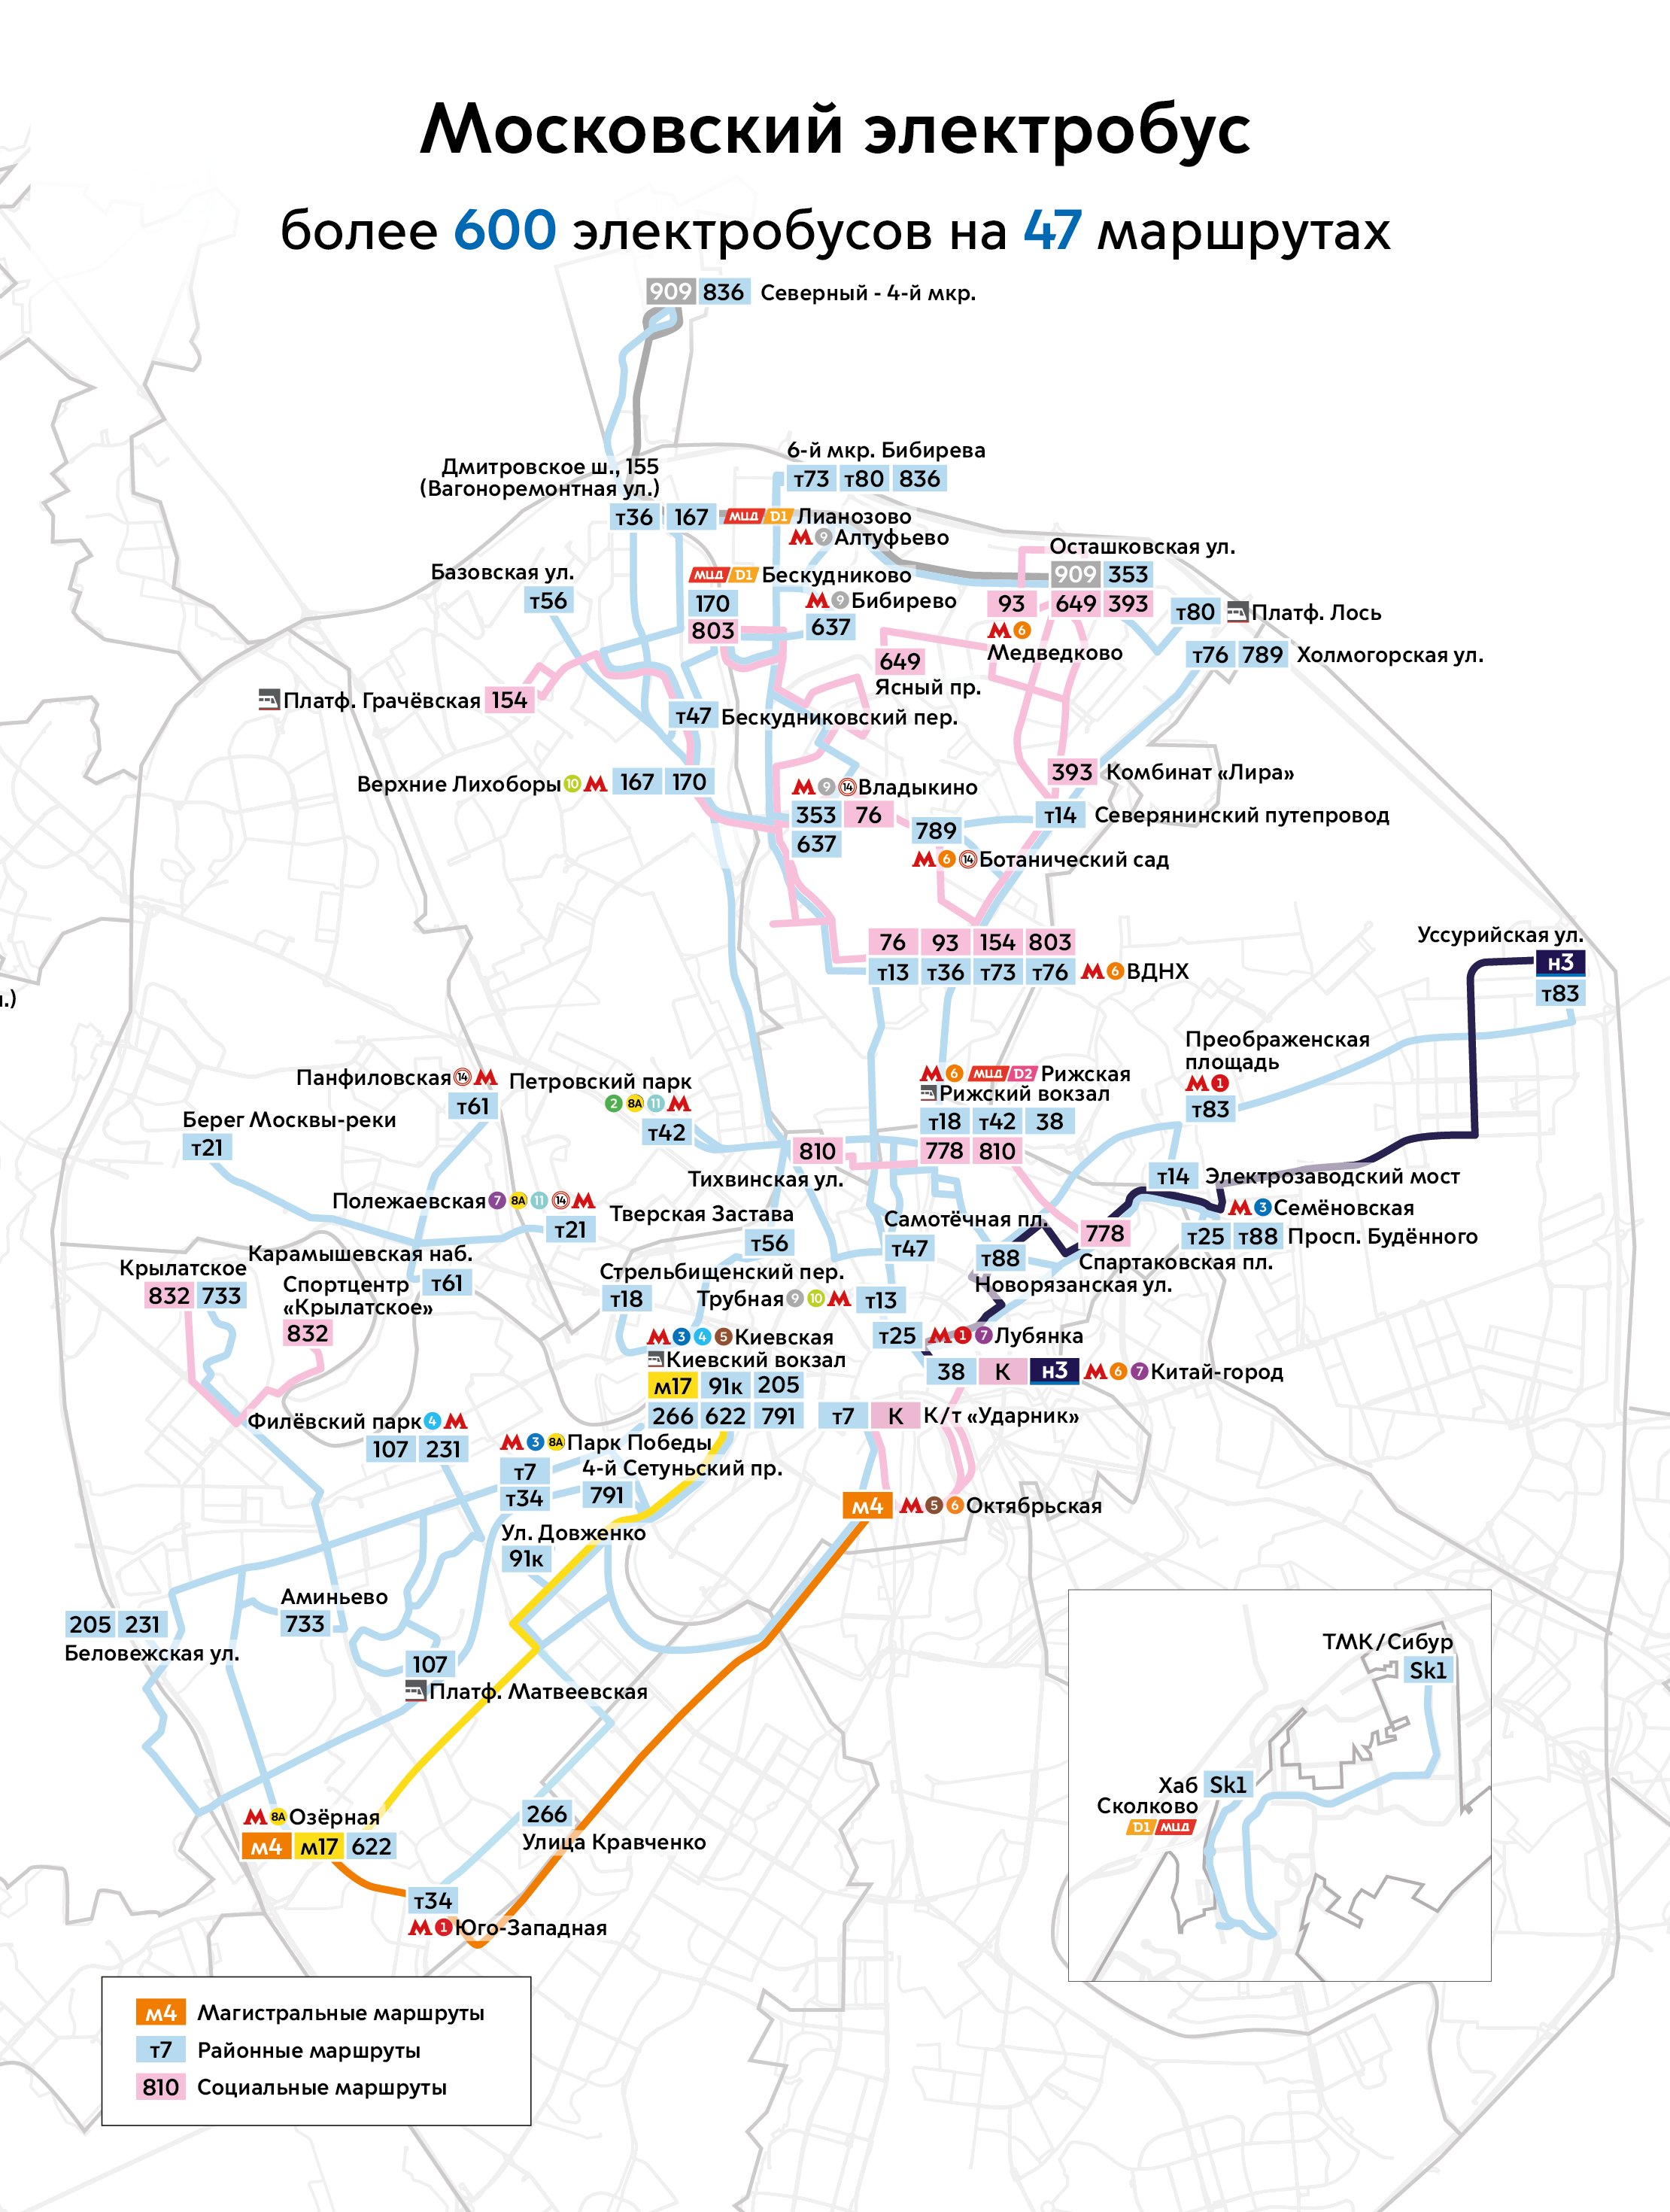 Maskva — Maps of Autonomous Electric Bus Lines